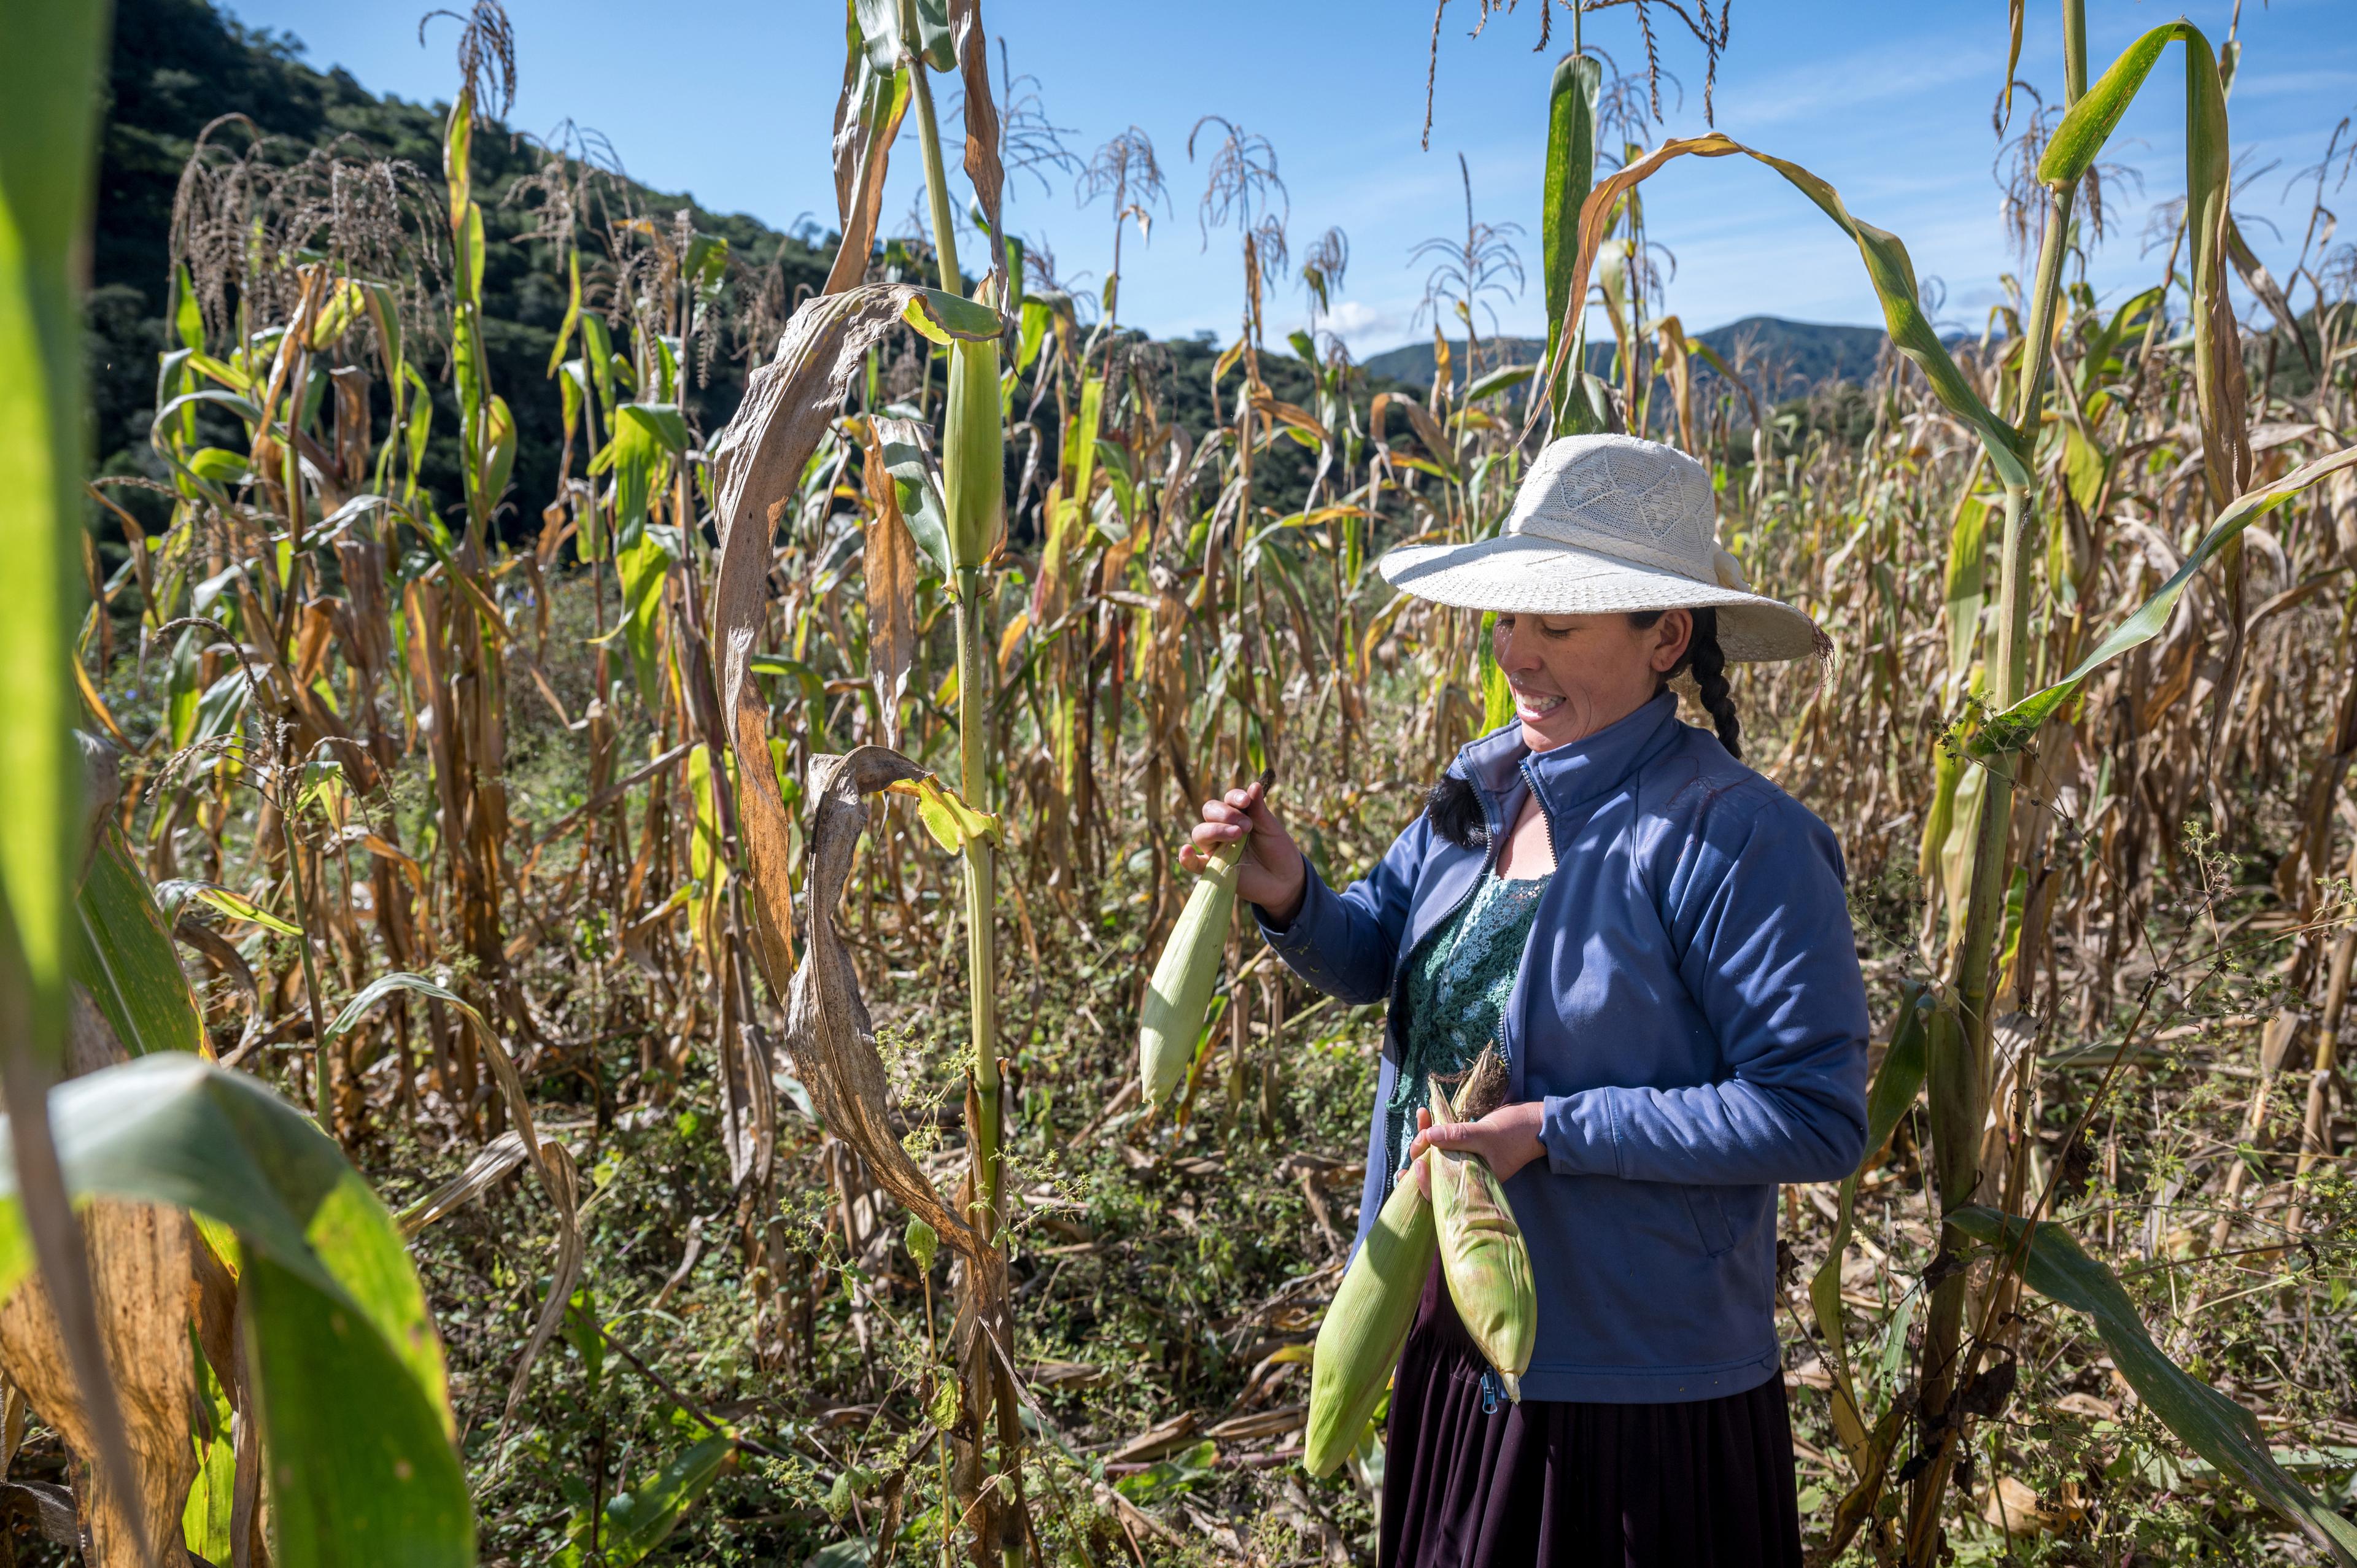 Una donna con un cappello sul capo è in piedi in un campo di mais. Stringe tra le mani una pannocchia e la guarda sorridendo.